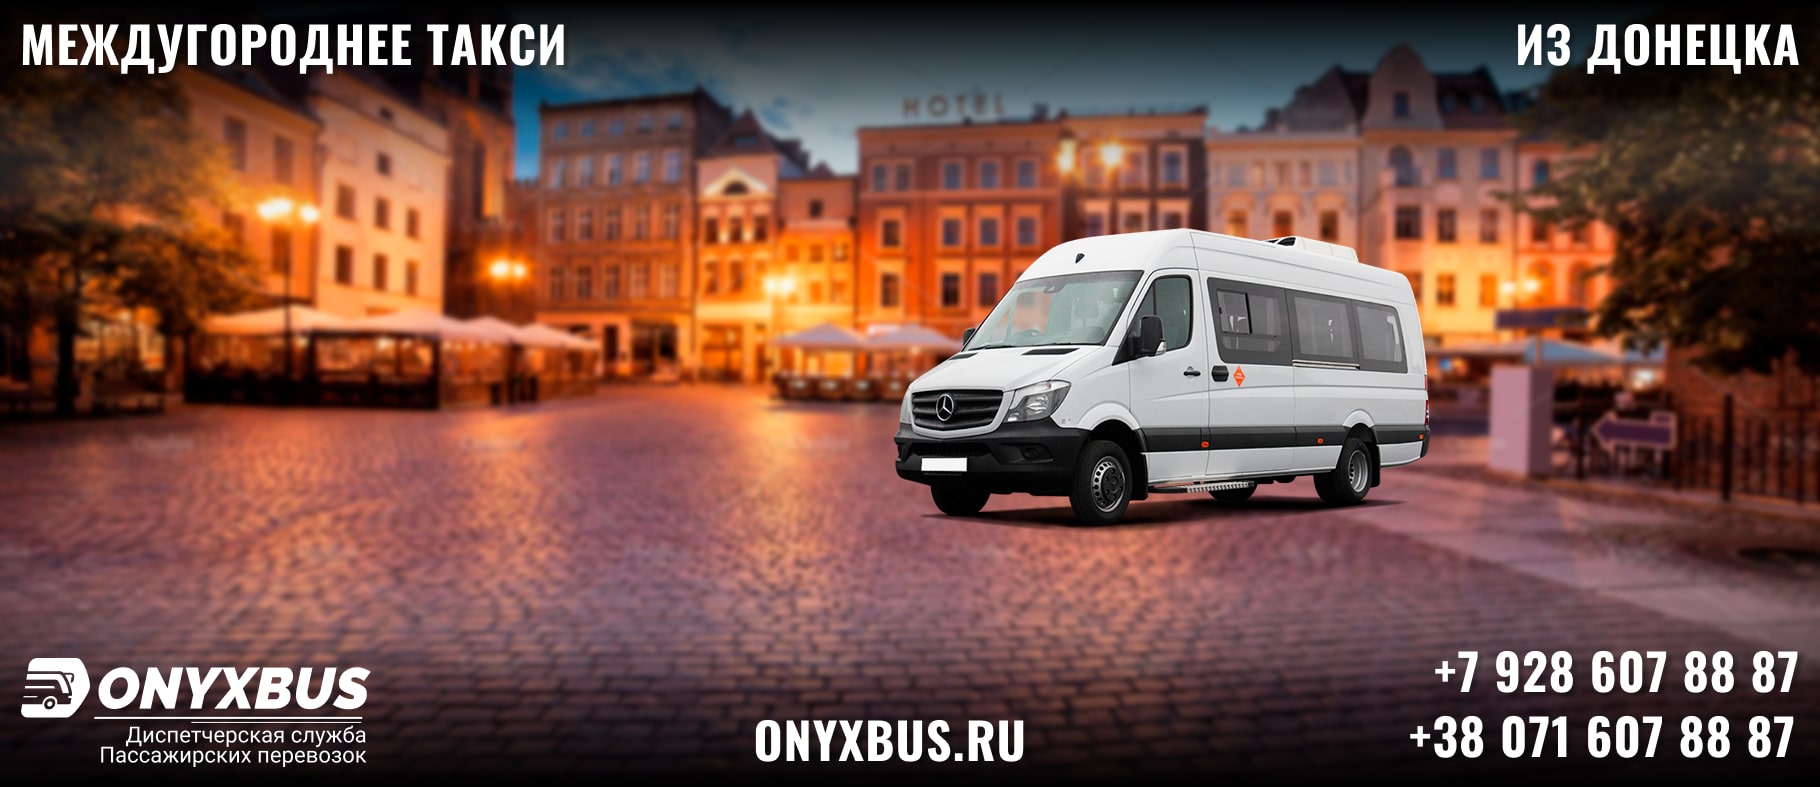 Заказ <br>Микроавтобуса Донецк - Тимашевск